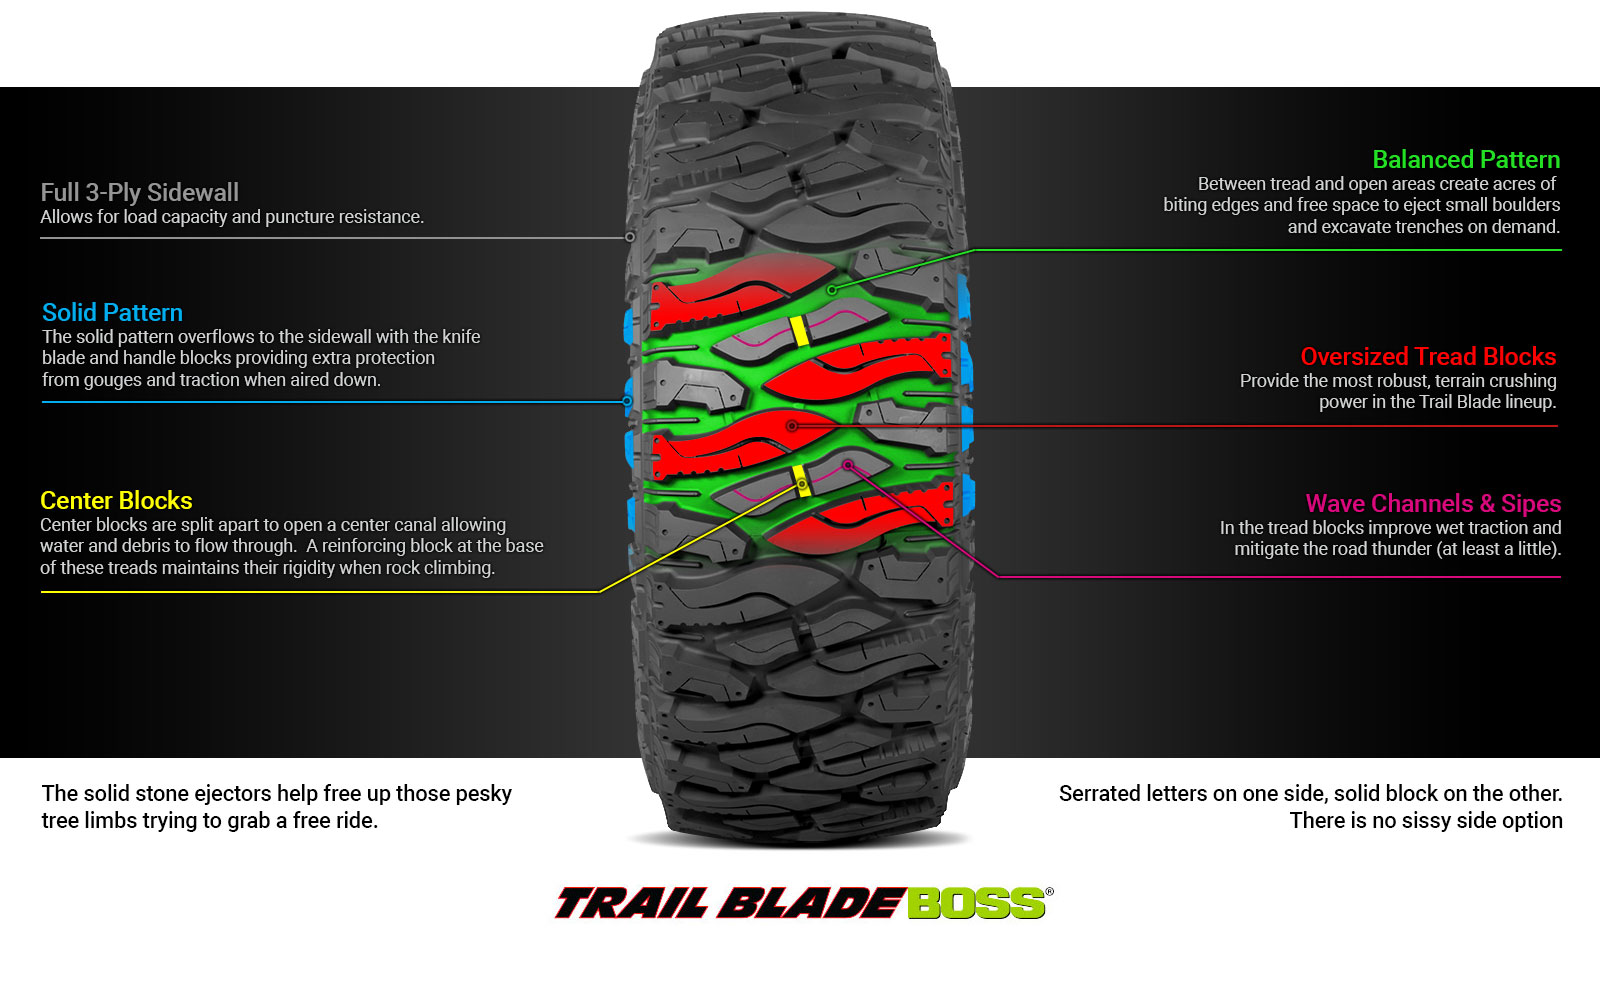 Trail Blade Boss Tire Technology